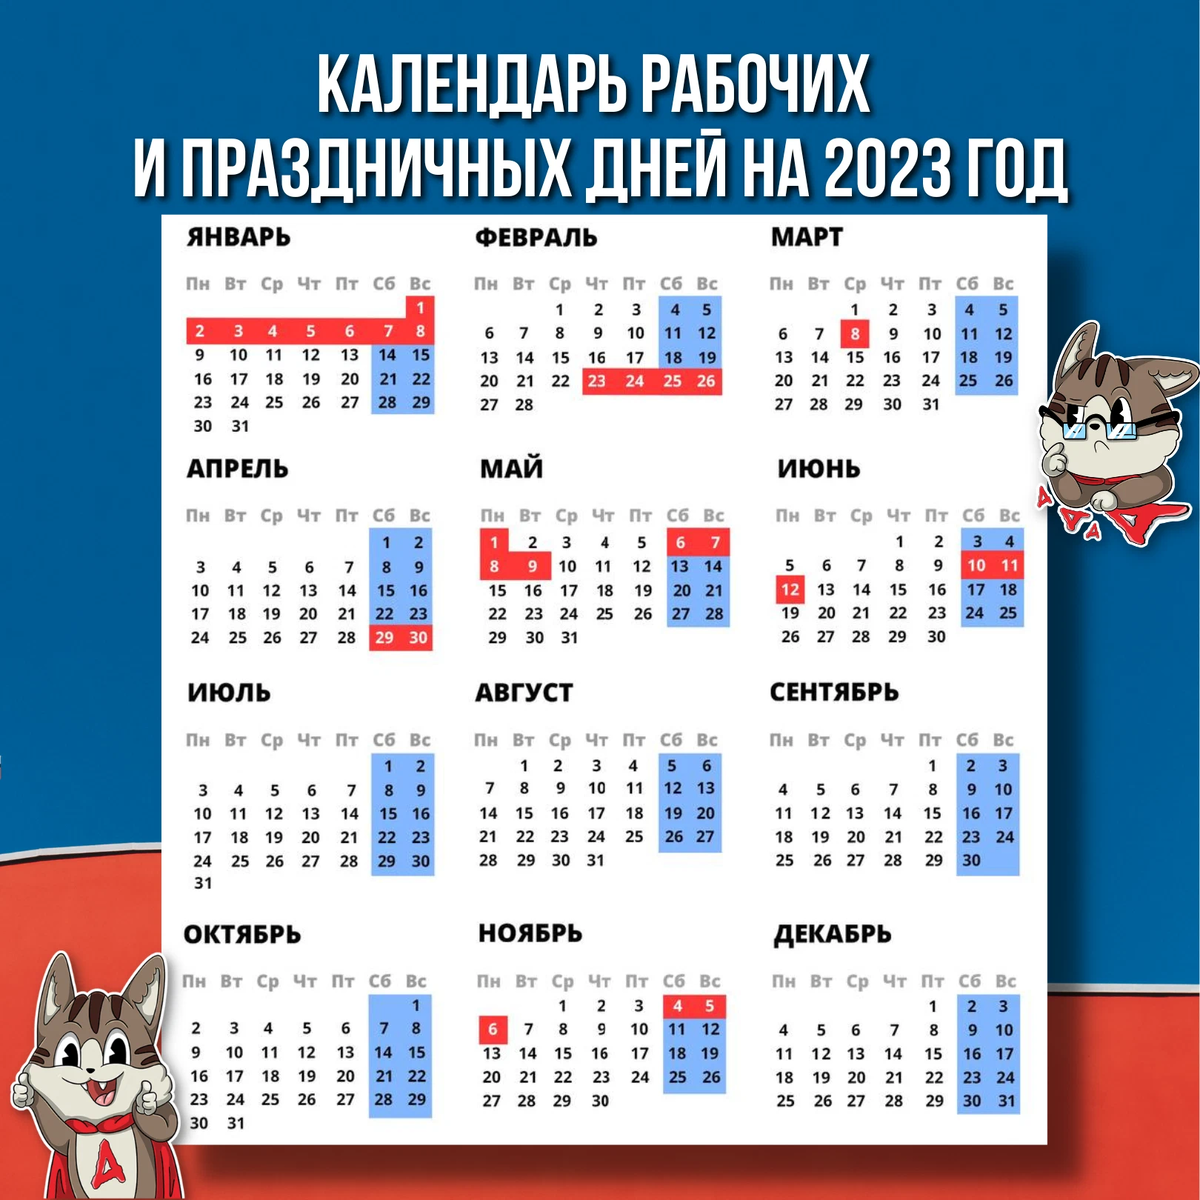 Постановление правительства выходные 2023. Праздничные выходные в 2023 году. Календарные праздники на 2023 год. Новогодние выходные в 2023 году. Выходные и праздничные дни в 2023 году в России.